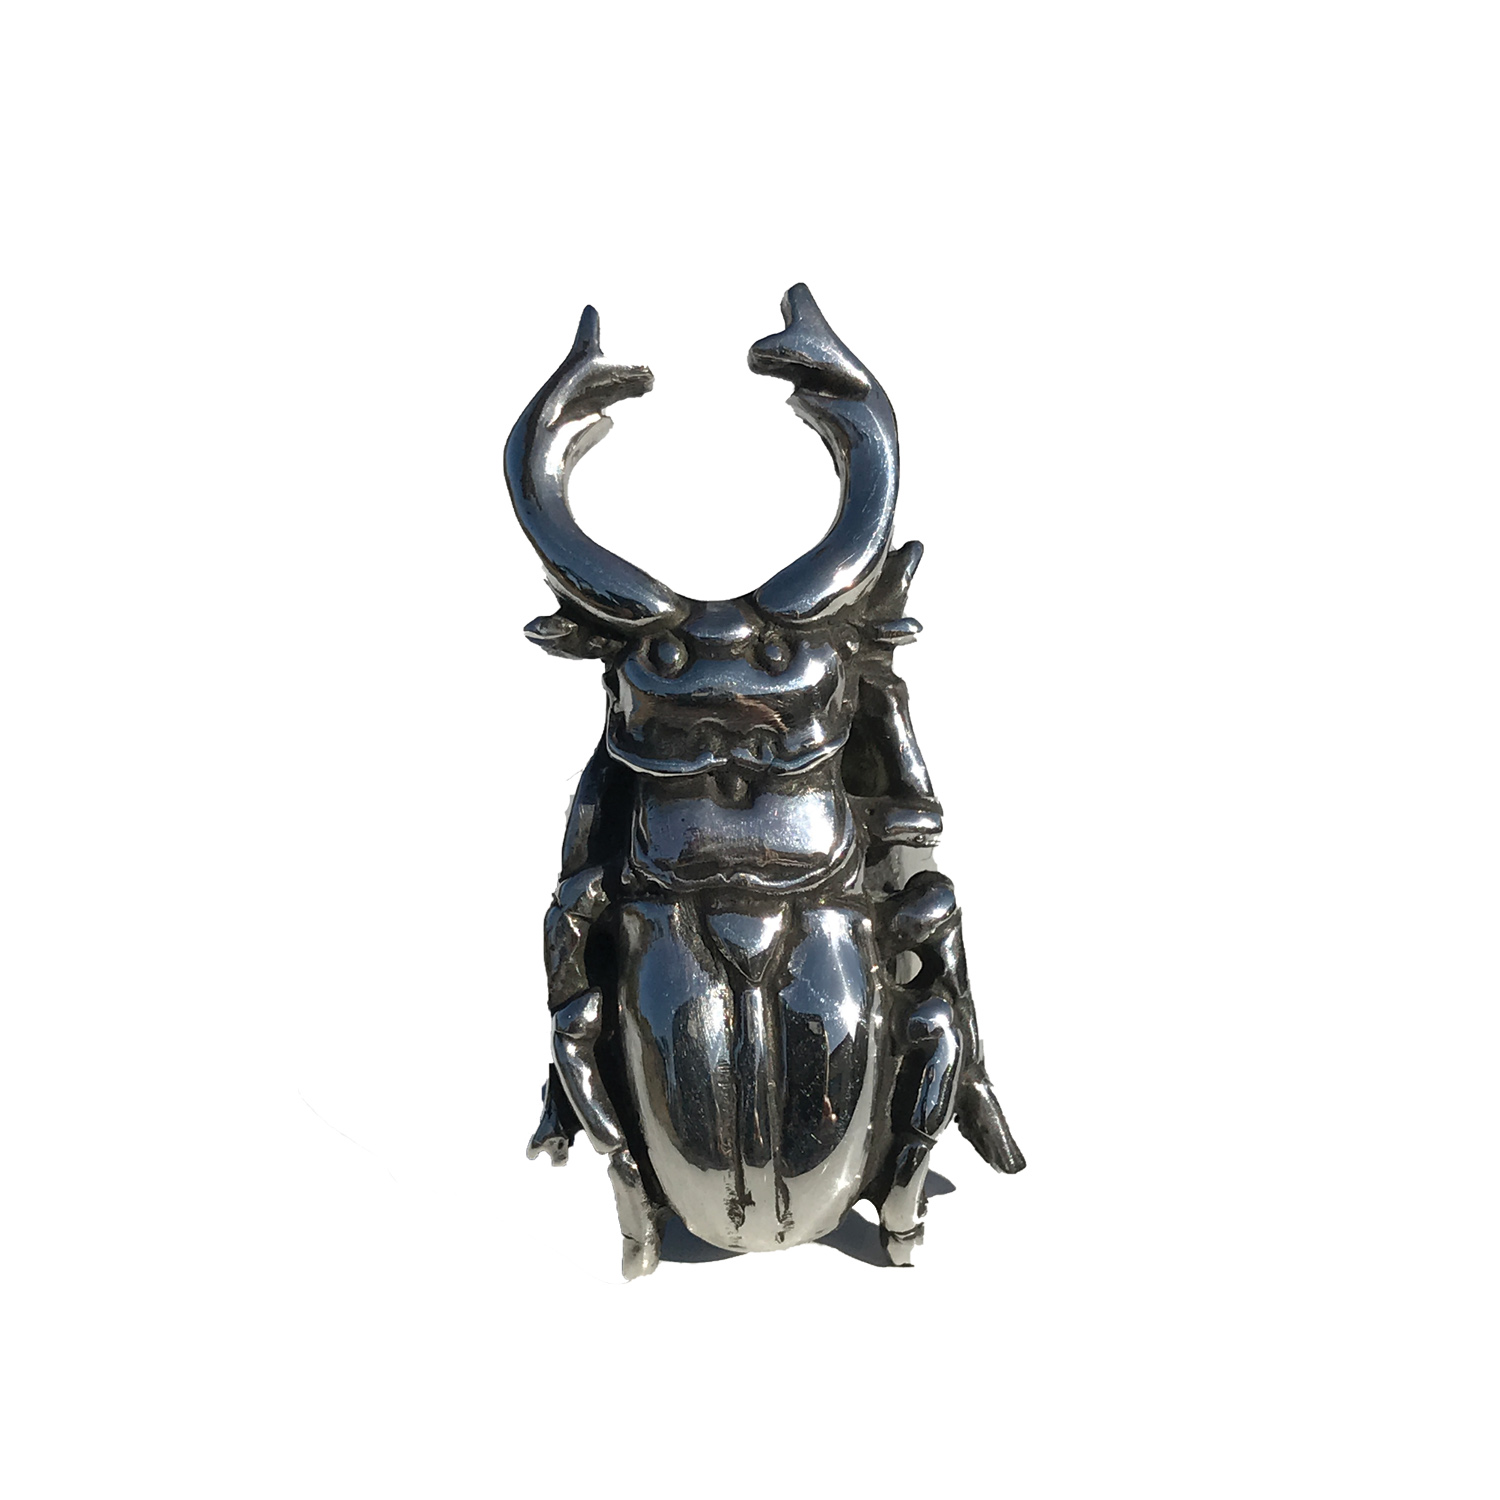 Details about   Rhinoceros beetle STERLING SILVER 925 Ring Stag Beetle Symbol of metamorphosis H